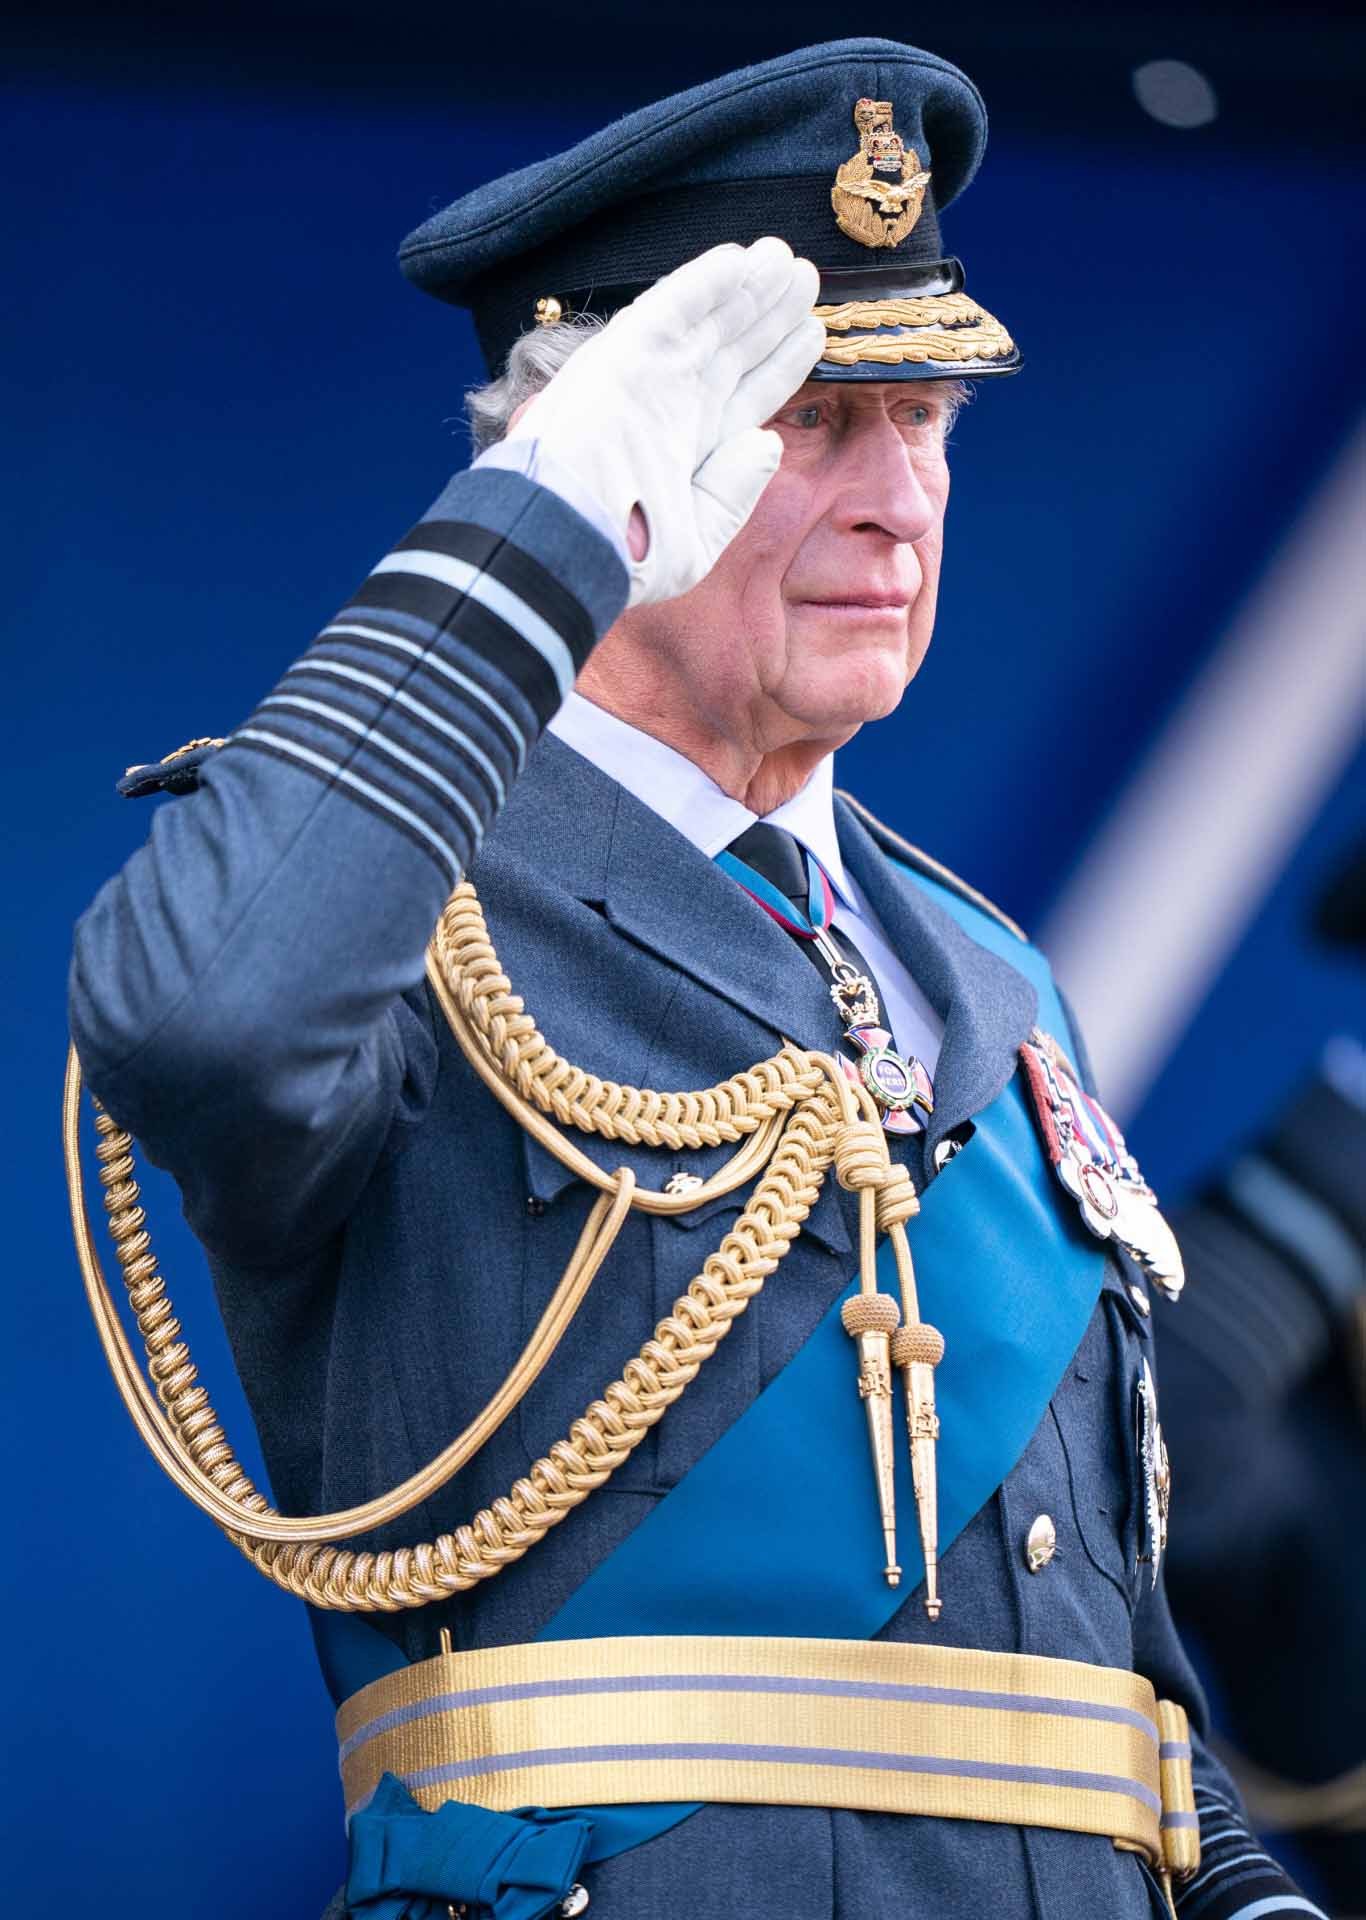 El príncipe Carlos de Inglaterra acepta tres millones de euros en efectivo de un jeque árabe